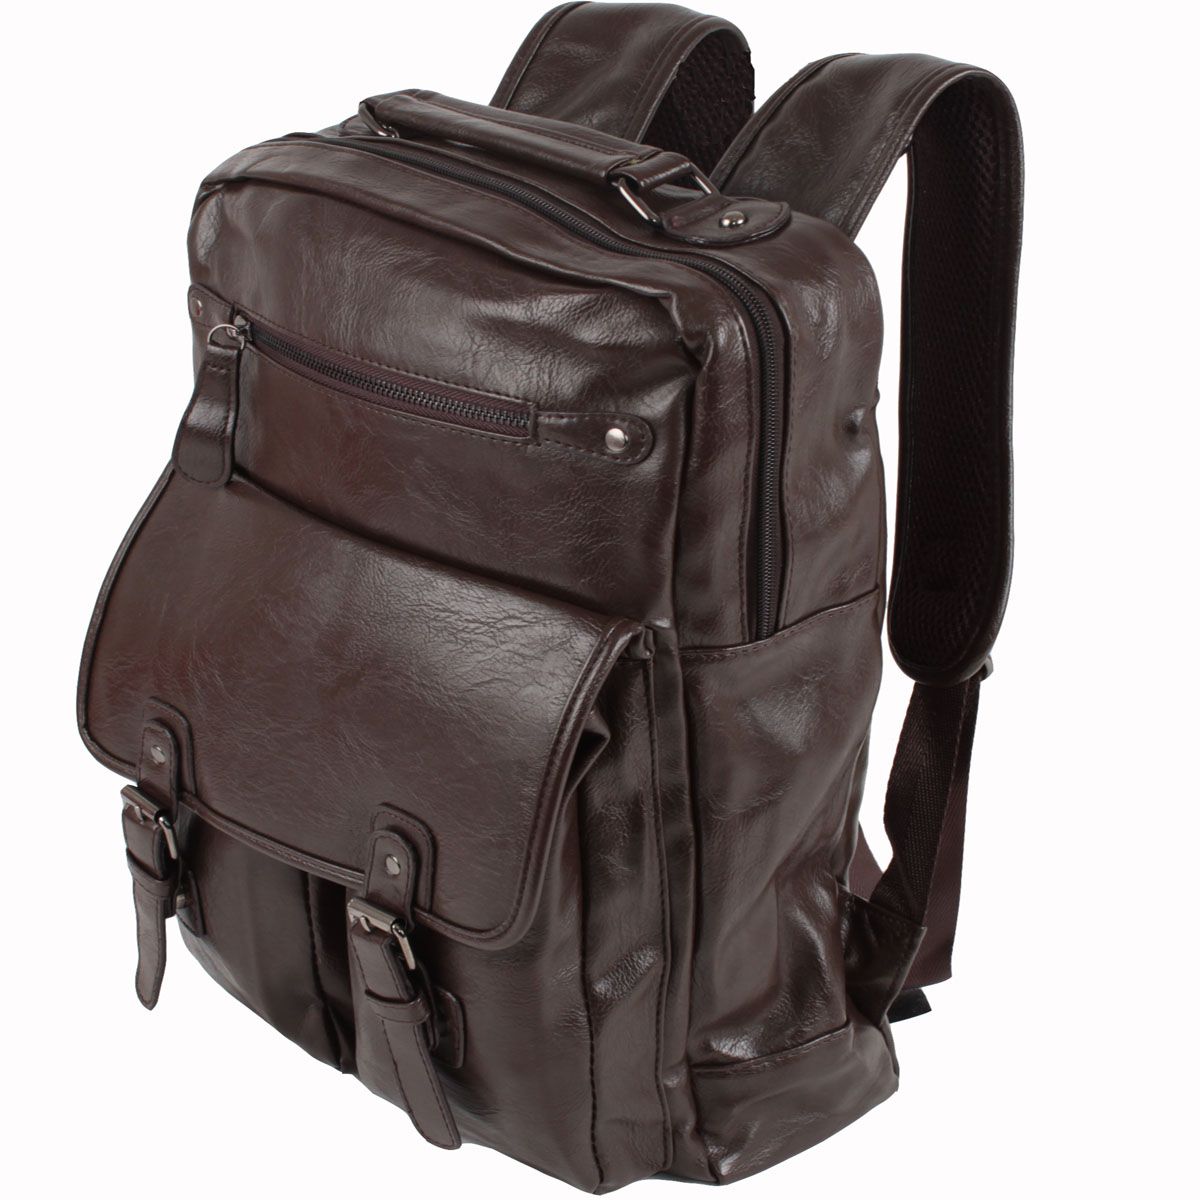 Сумка-рюкзак Flioraj, цвет: коричневый. 0921 коричн